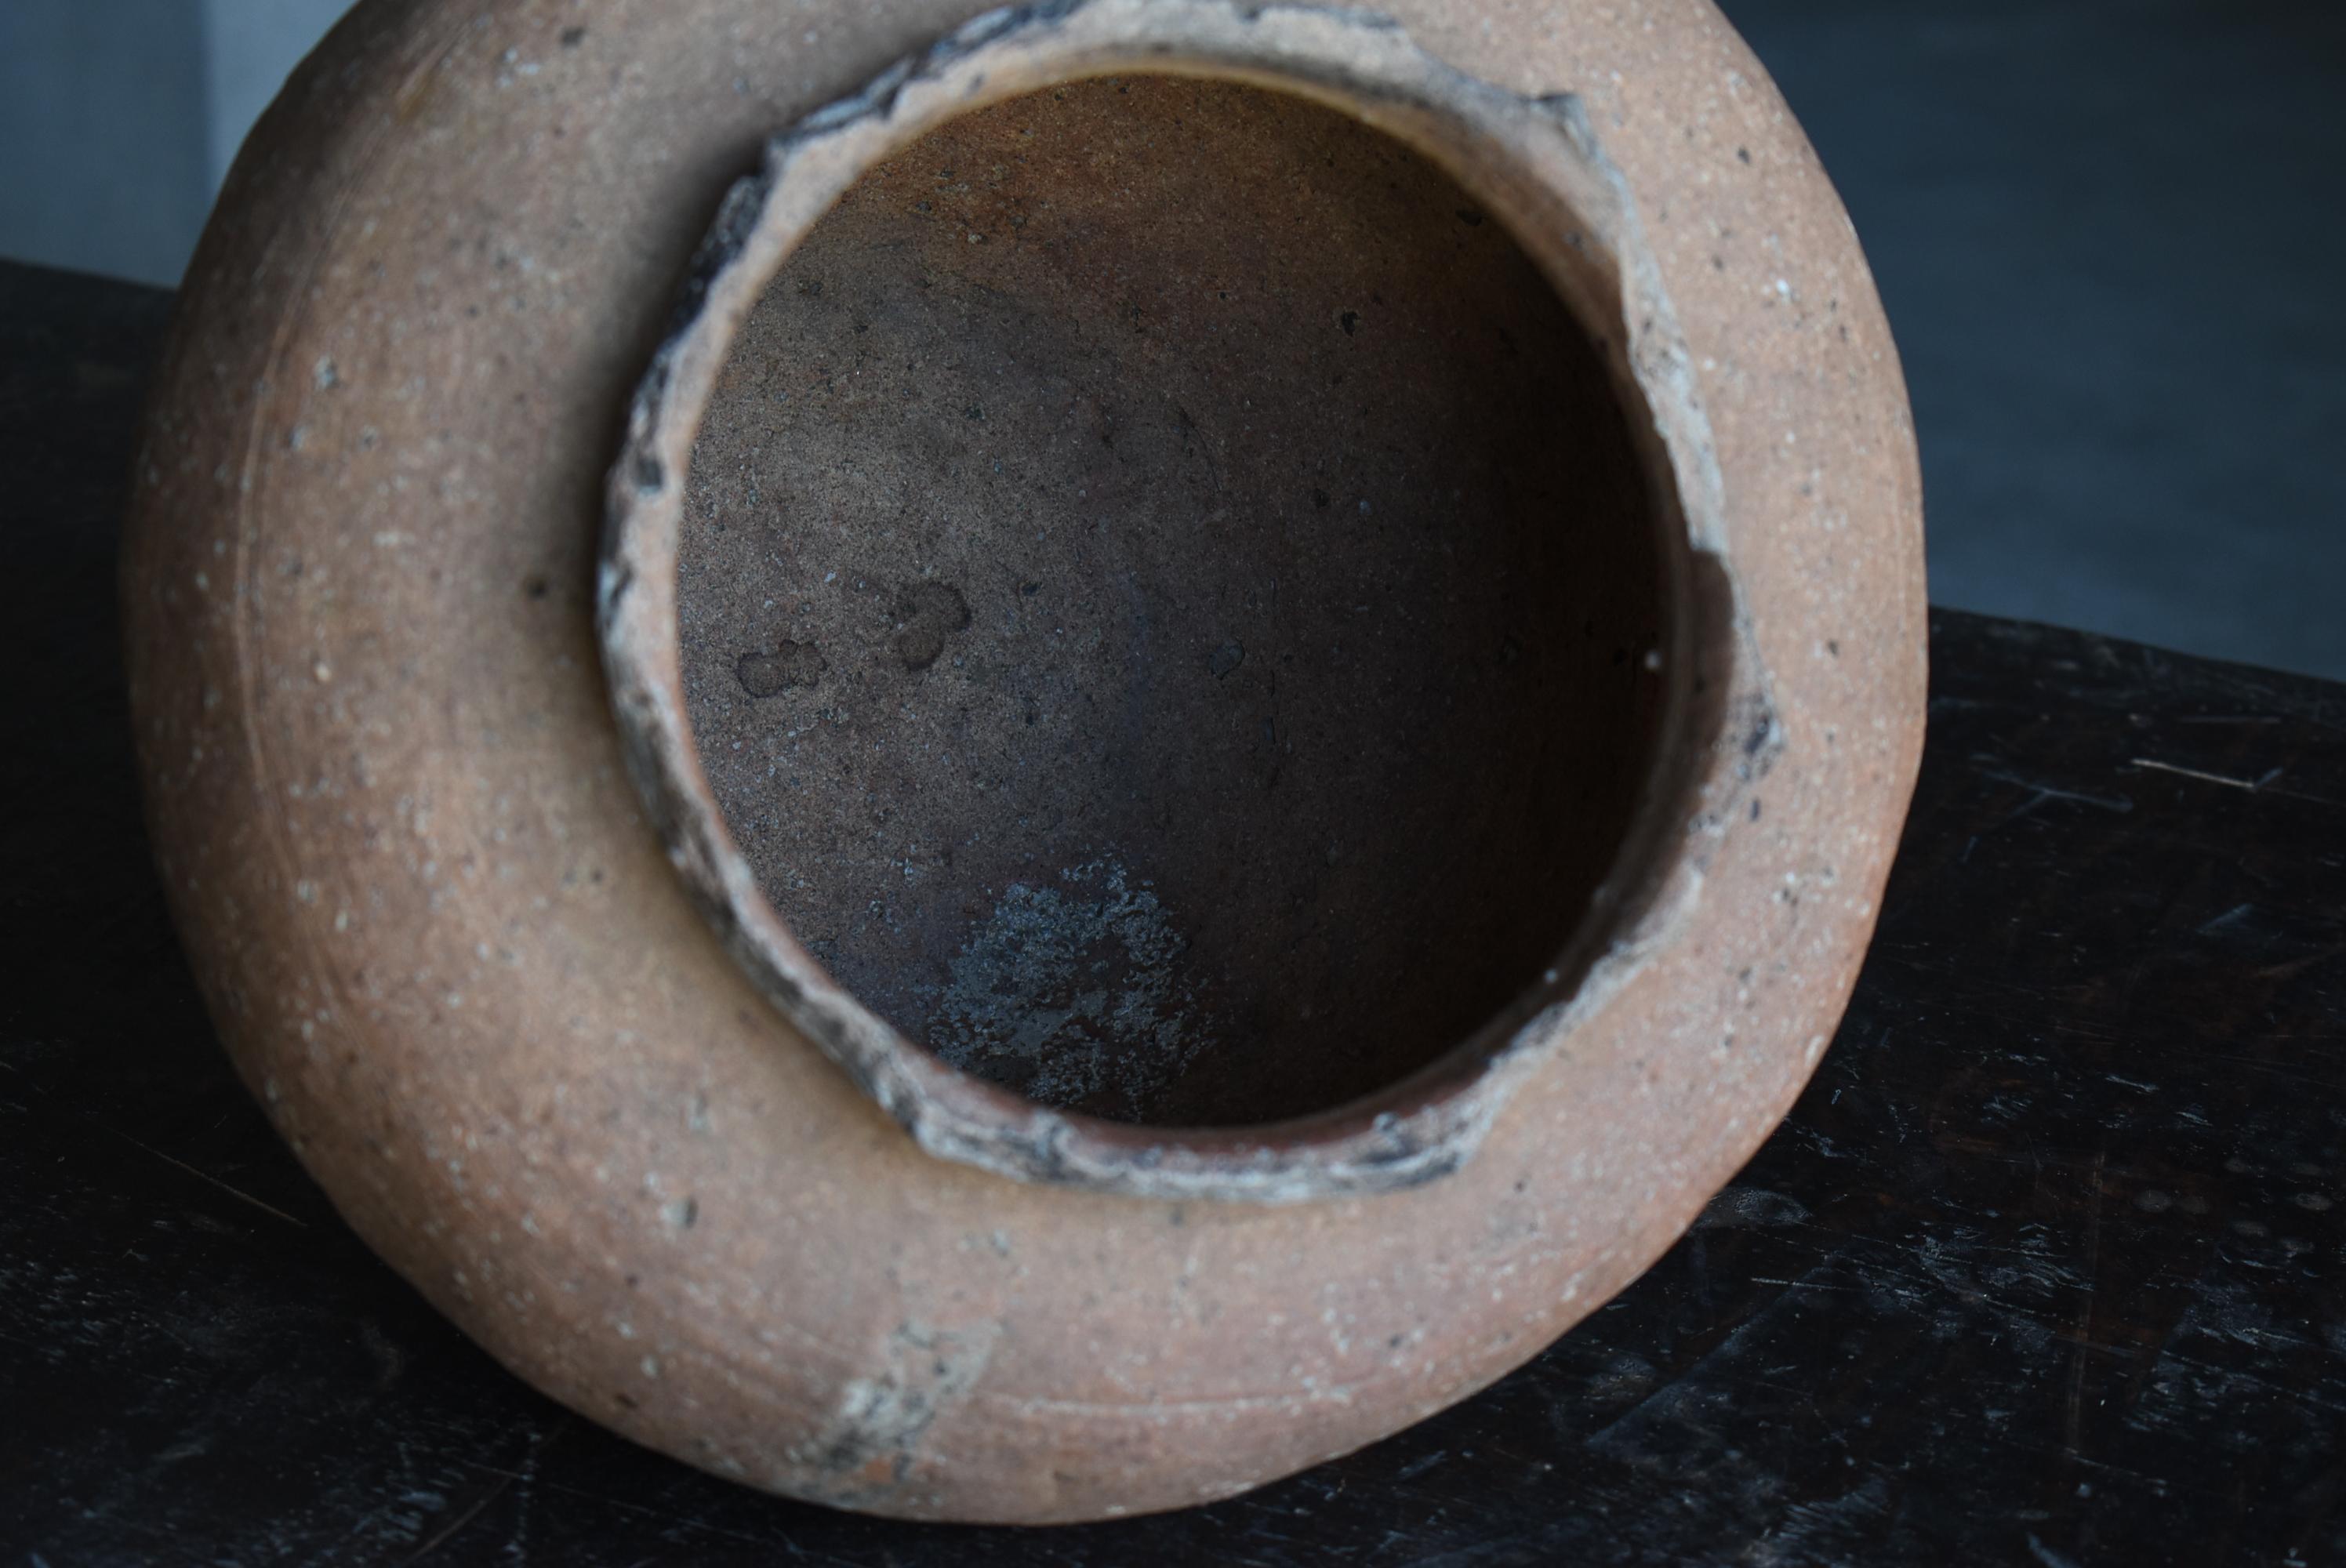 Japanese Antique Pottery Vase 1400s-1500s / Flower Vase Jar Pot Wabisabi 8